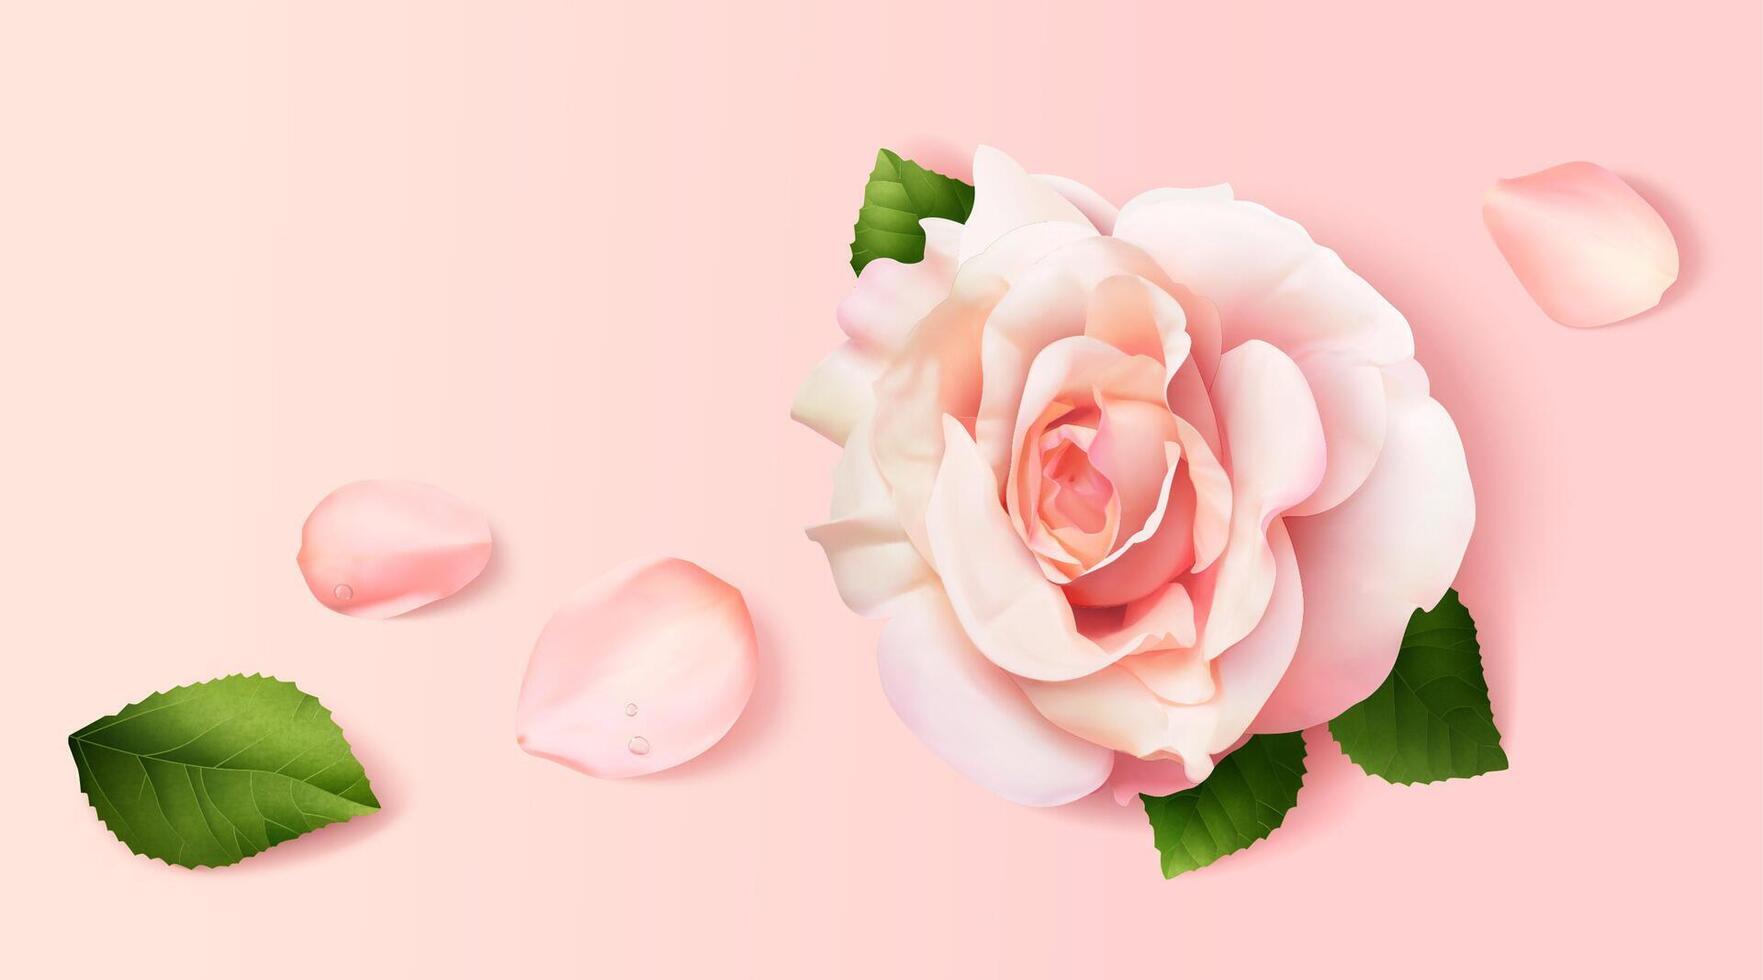 realistisk rosa ro och kronblad på rosa bakgrund i 3d illustration, topp se. vektor